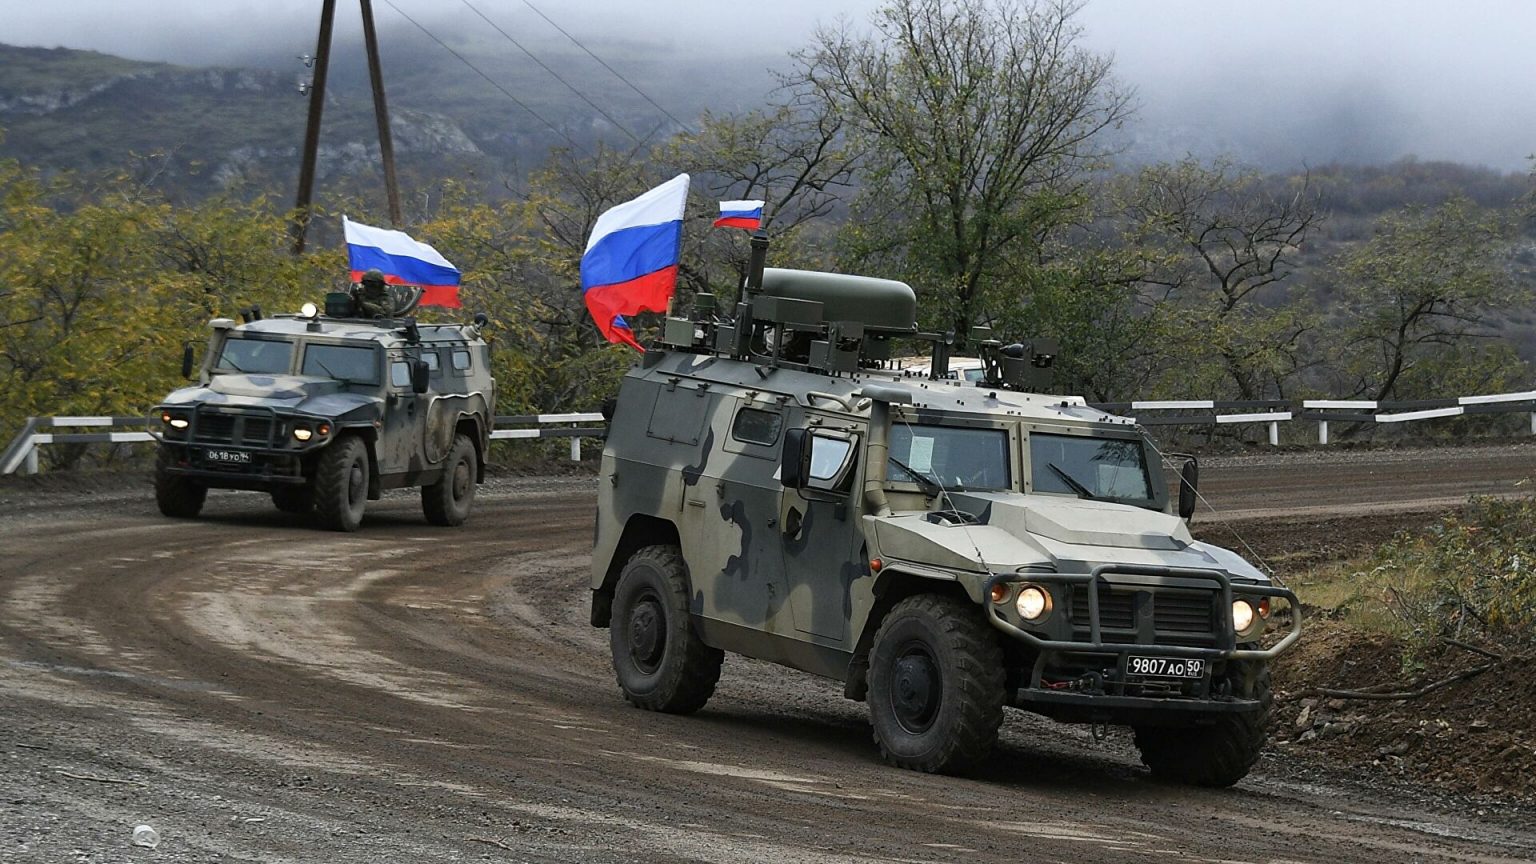 ՌԴ խաղաղապահ զորախմբի պատասխանատվության գոտում` Արցախում, խախտումներ չեն արձանագրվել